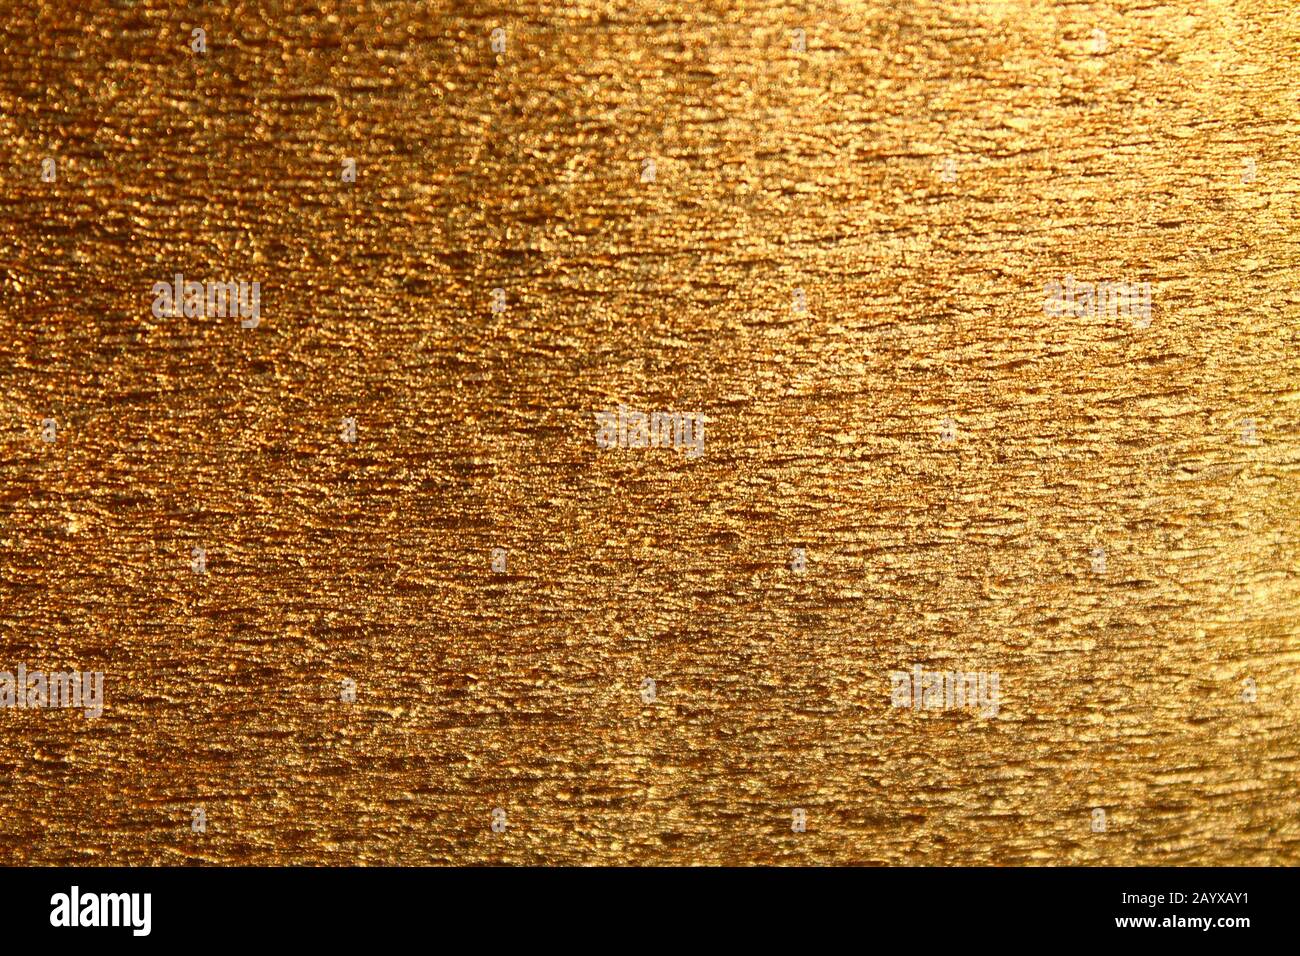 Das Bild zeigt einen Hintergrund mit goldenem strukturiertem Papier Stockfoto